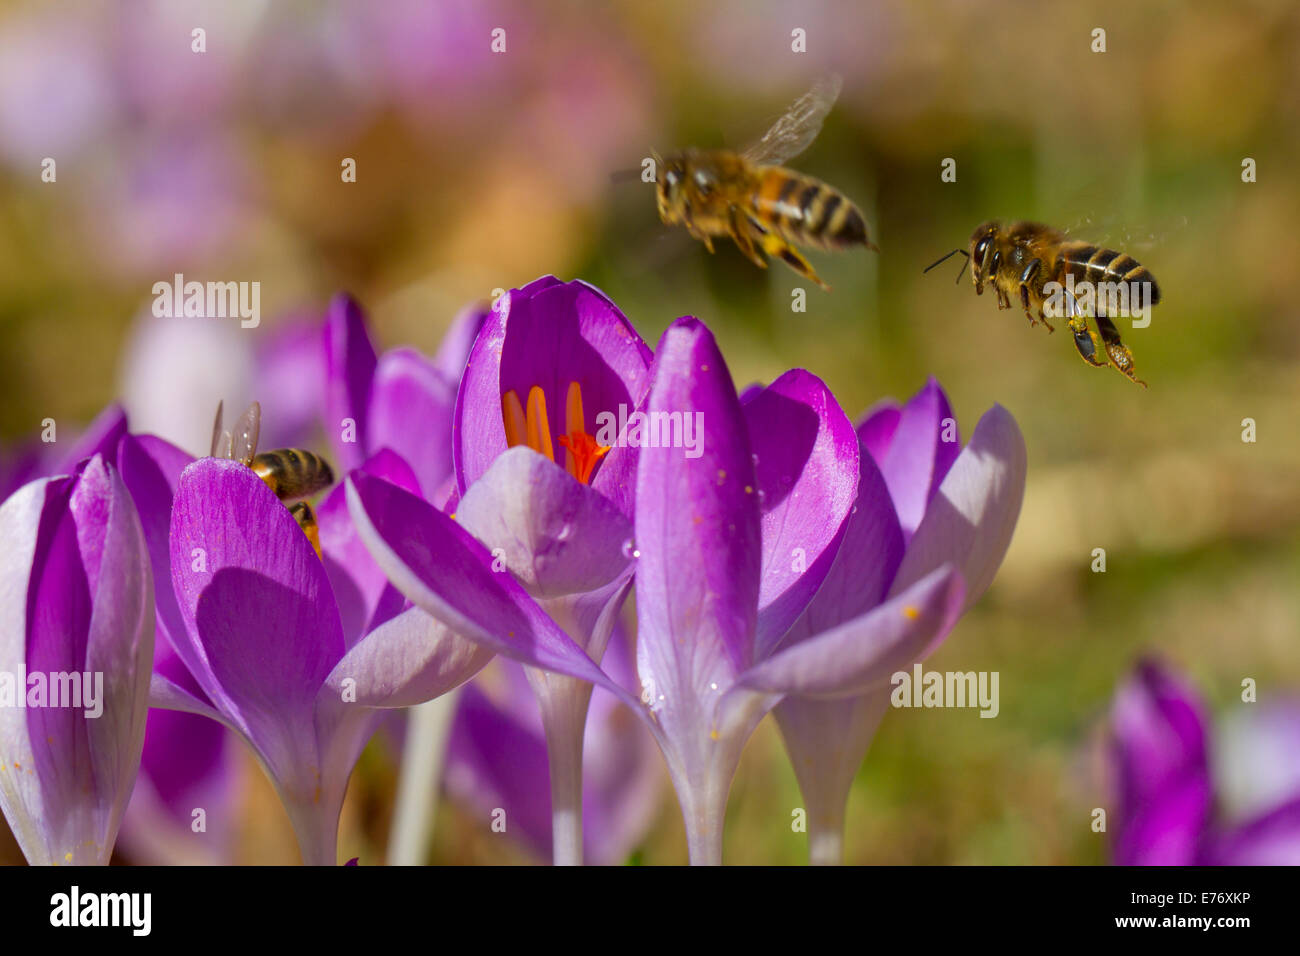 Western miele delle api (Apis mellifera) lavoratori alimentare sui fiori di Crocus (Crocus sp.) in un giardino. Powys, Galles. Febbraio. Foto Stock